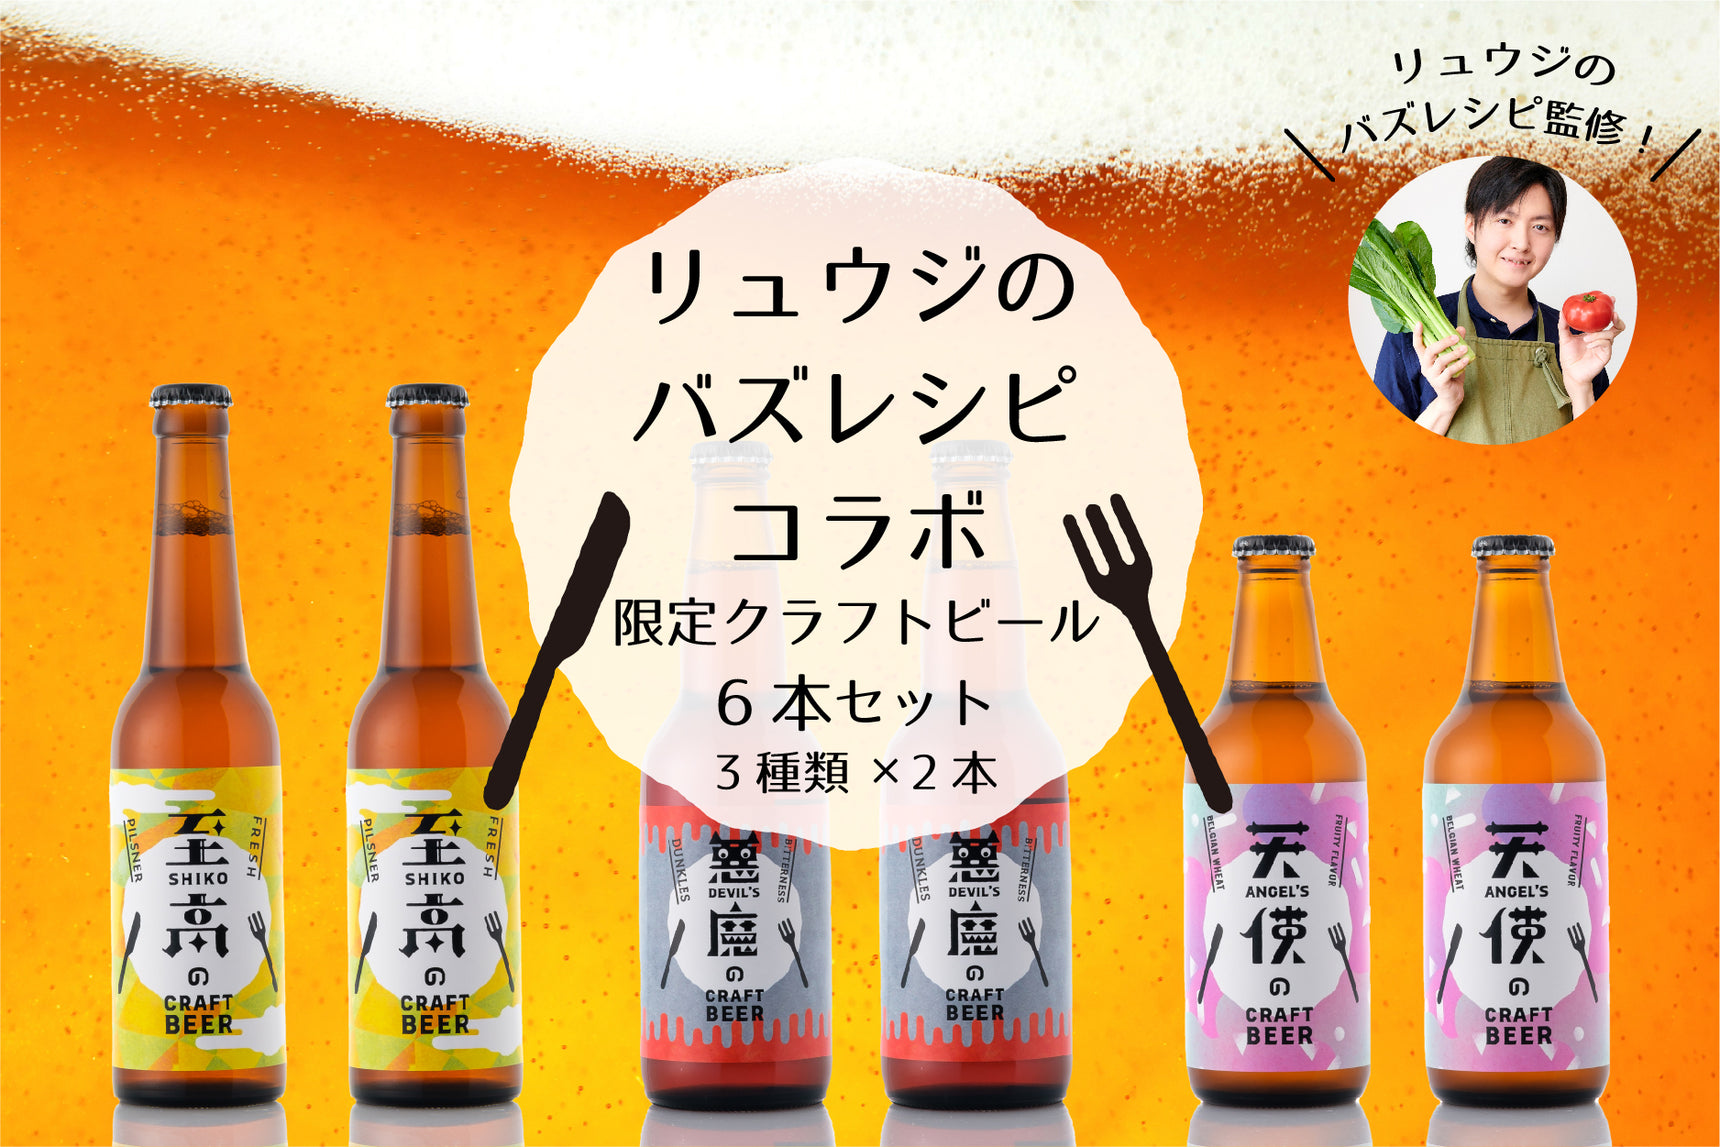 【リュウジのバズレシピコラボ限定】クラフトビール6本セット